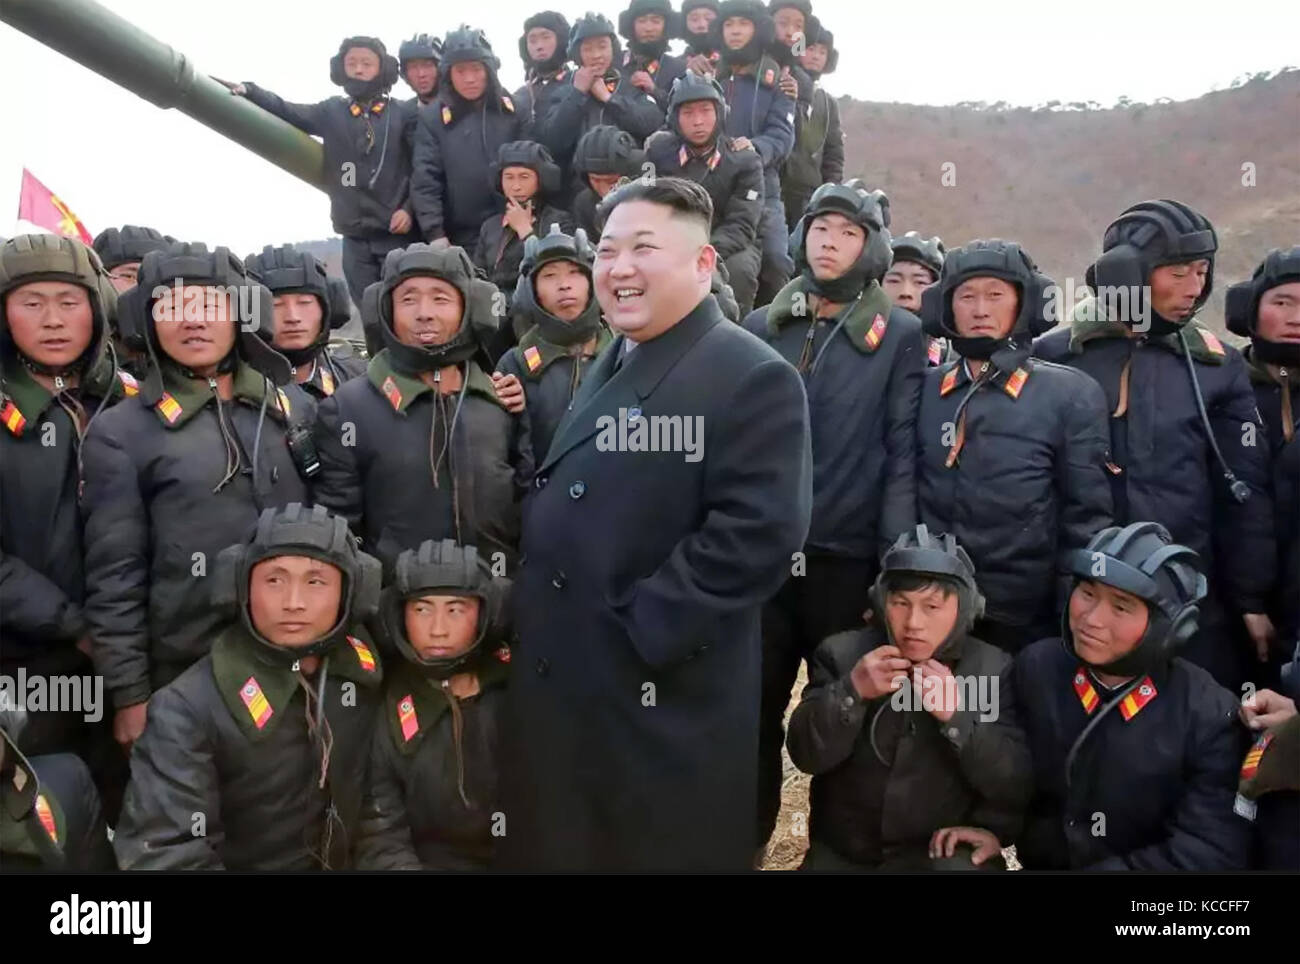 Kim JONG-UN mit einer Gruppe von Panzer-Soldaten auf Jangjae Island. Undatiertes Foto, herausgegeben von KCNA (nordkoreanische Central News Agency) im April 2017. Stockfoto